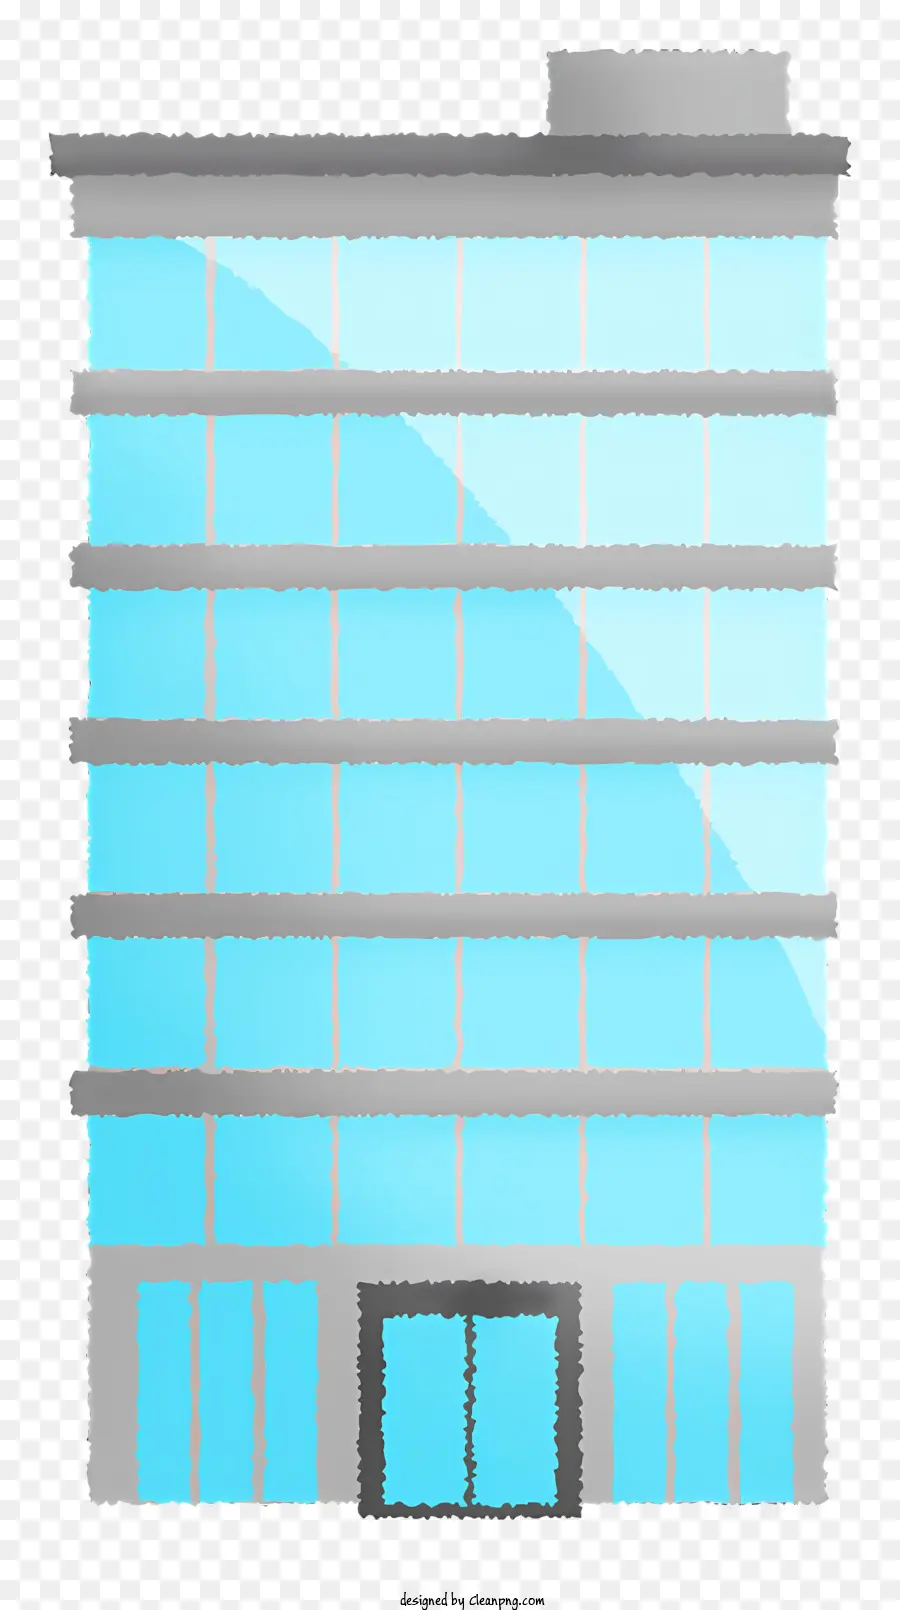 Facciata in vetro di costruzione edificio telaio bianco edificio in vetro bianco Balcone bianco con ringhiera - Edificio in vetro con cornice bianca e balcone